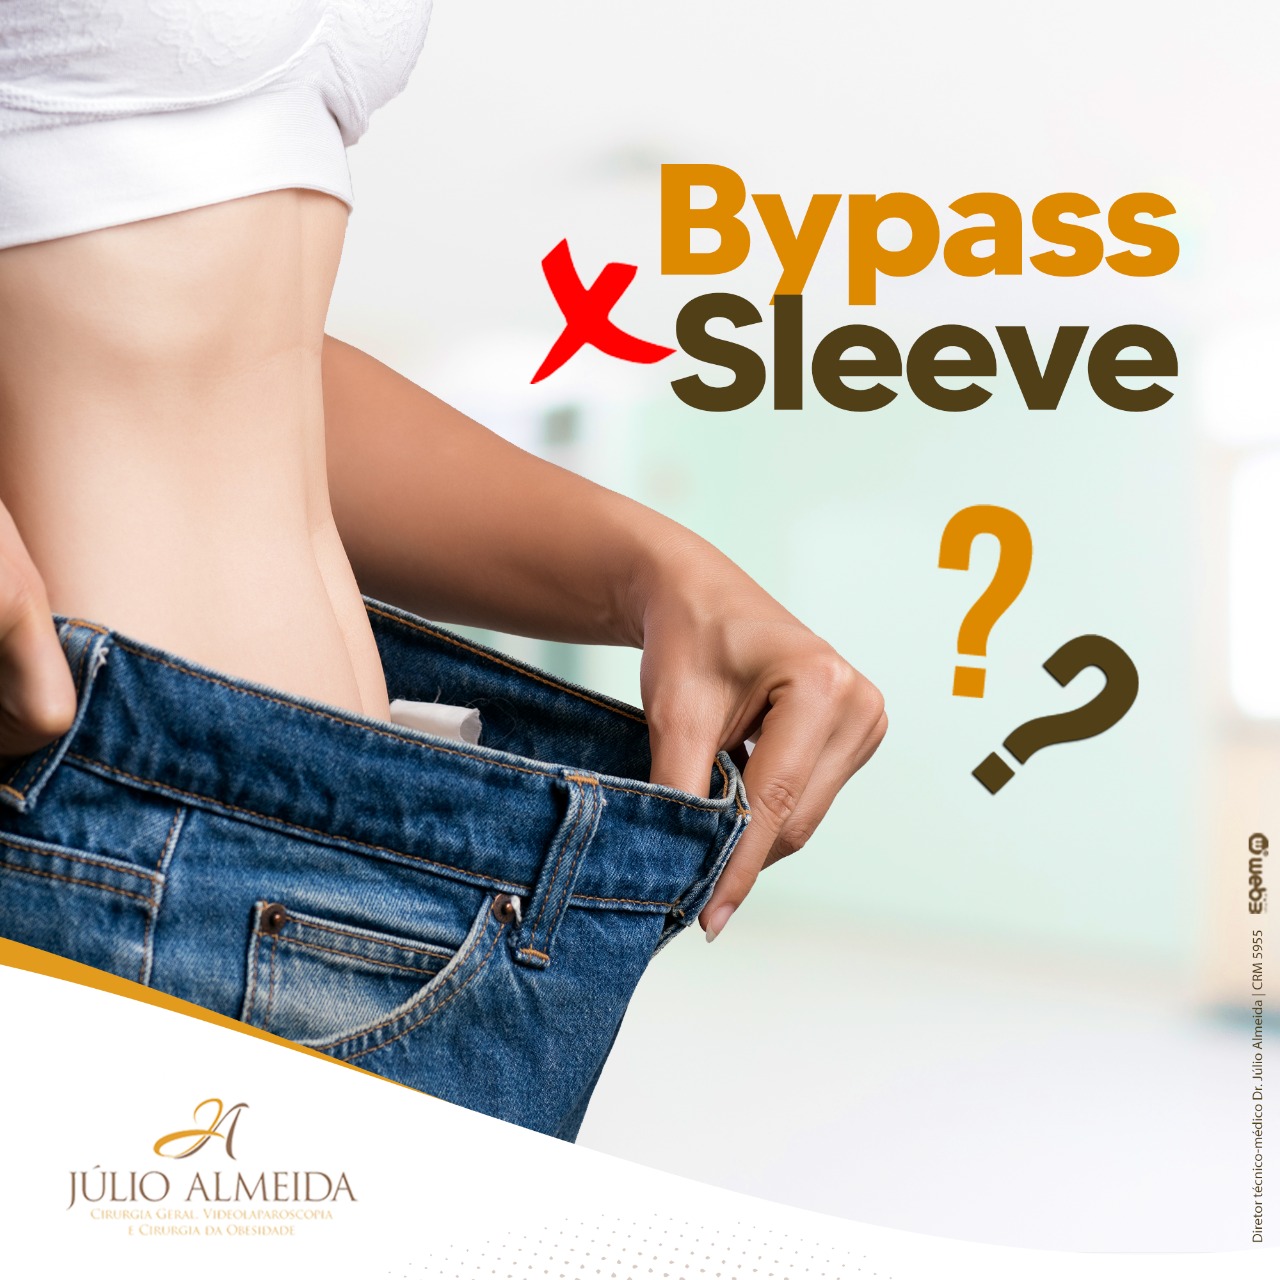 Dr Alexandre - Bypass vs Sleeve